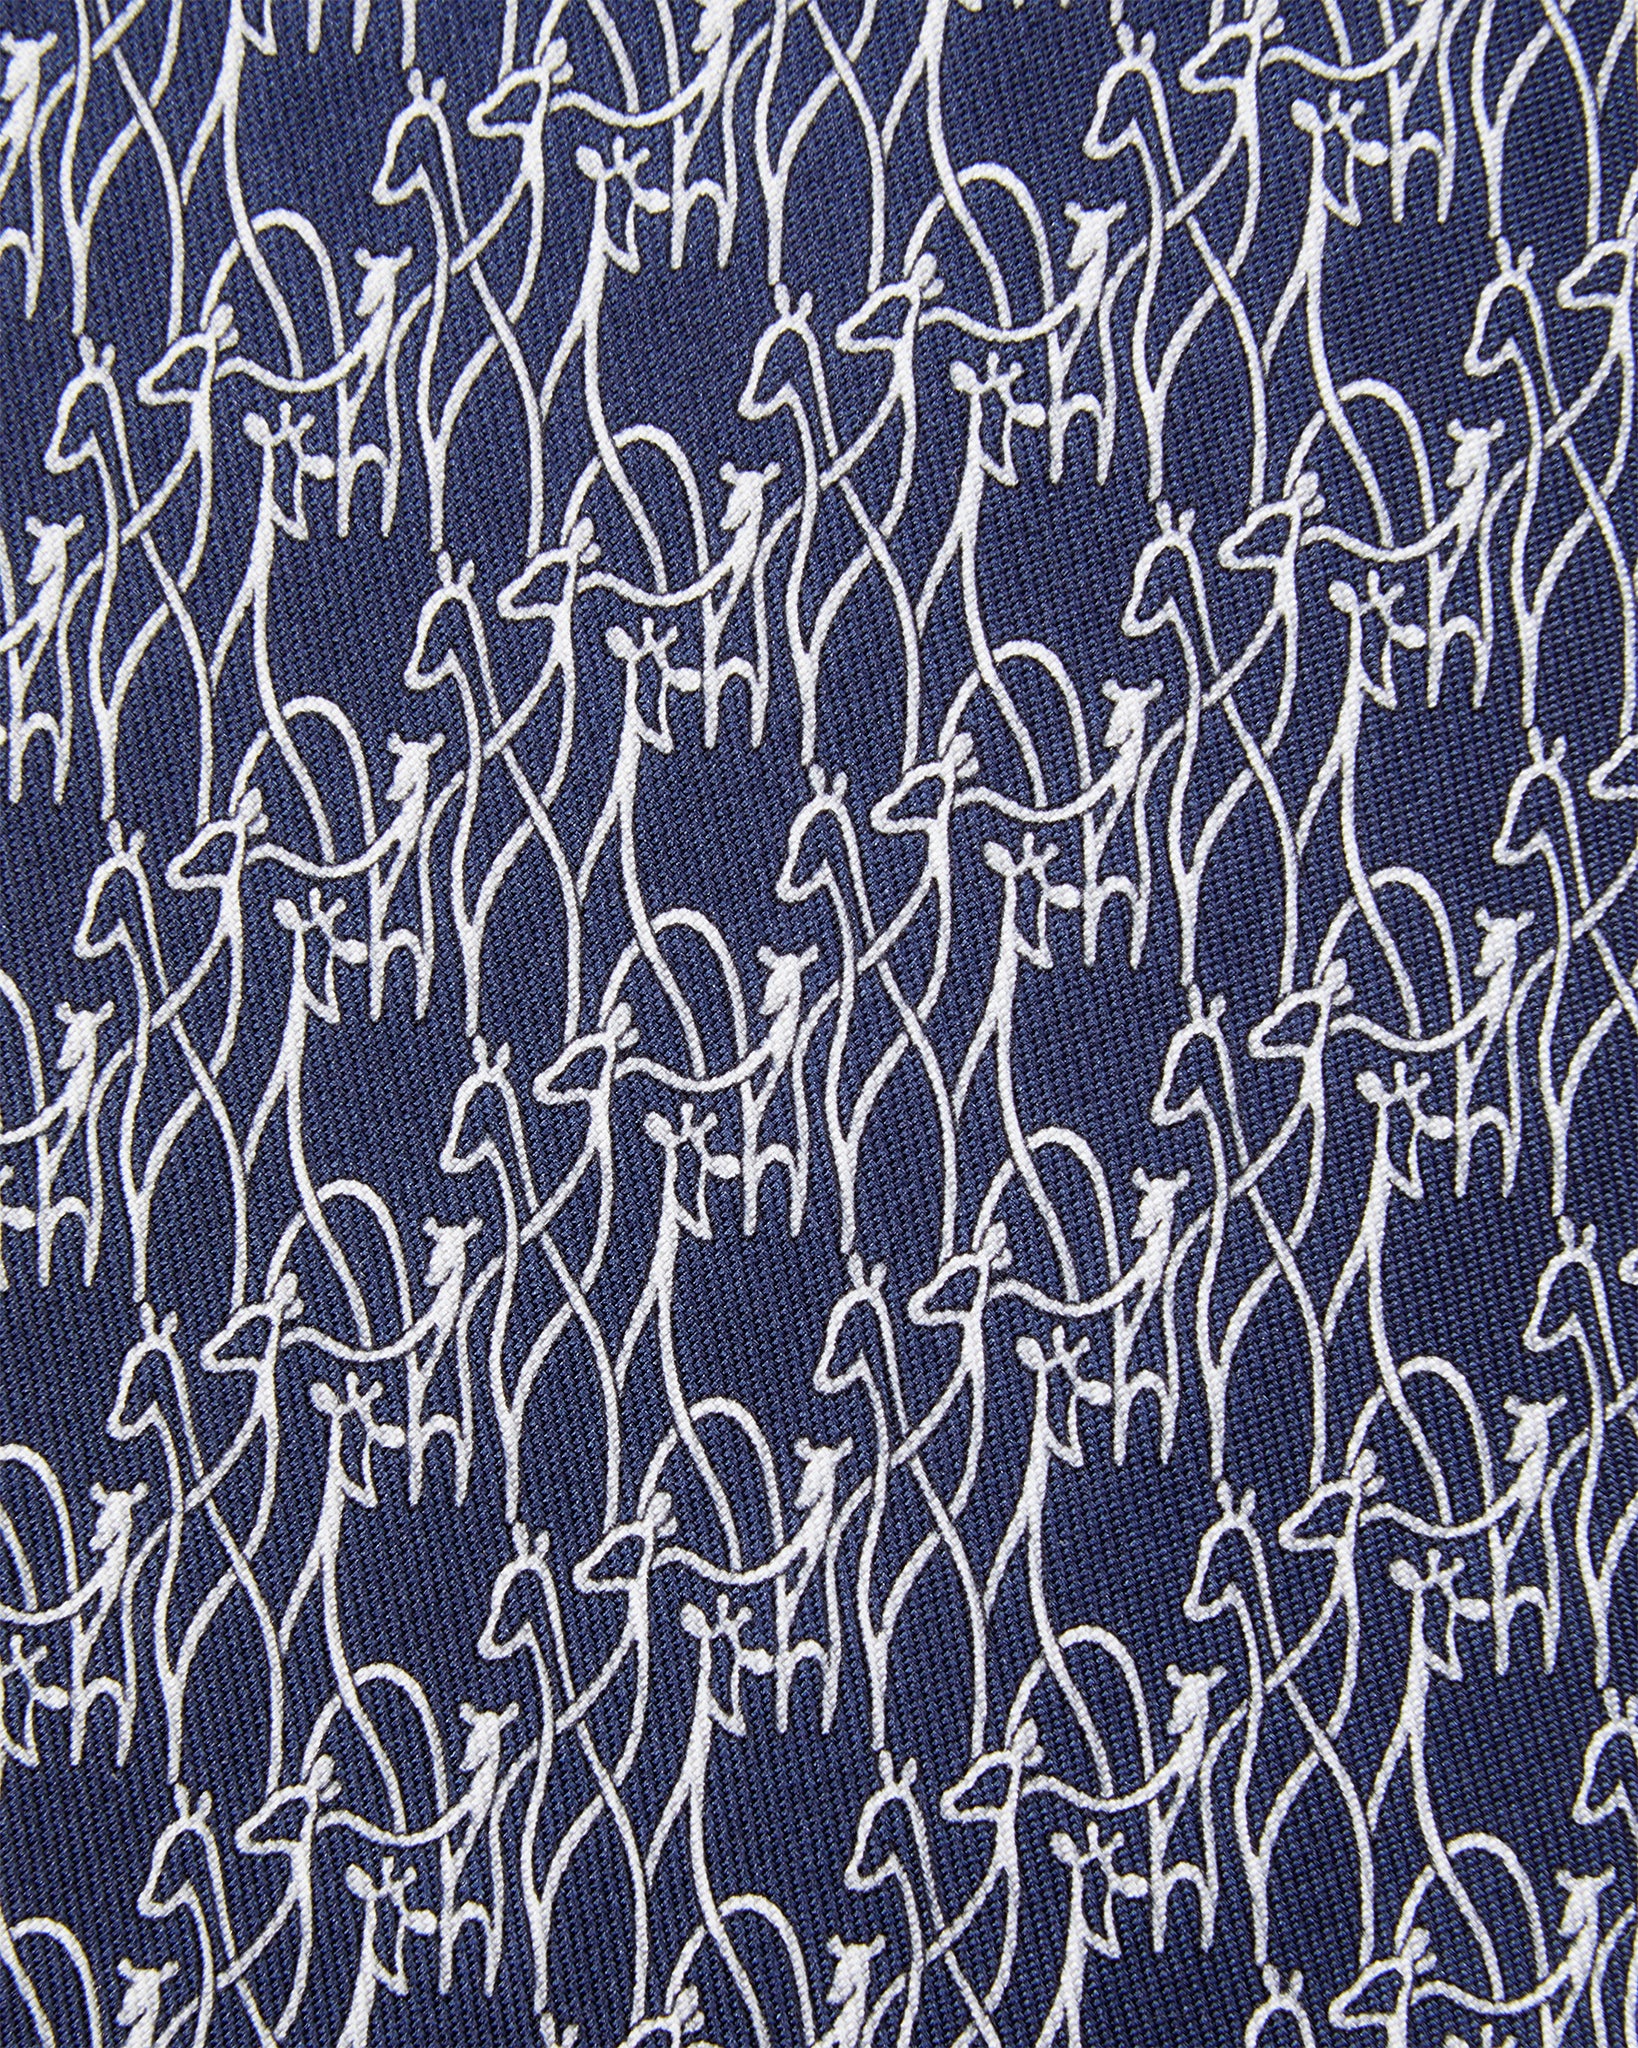 Silk Print Tie in Navy Giraffes